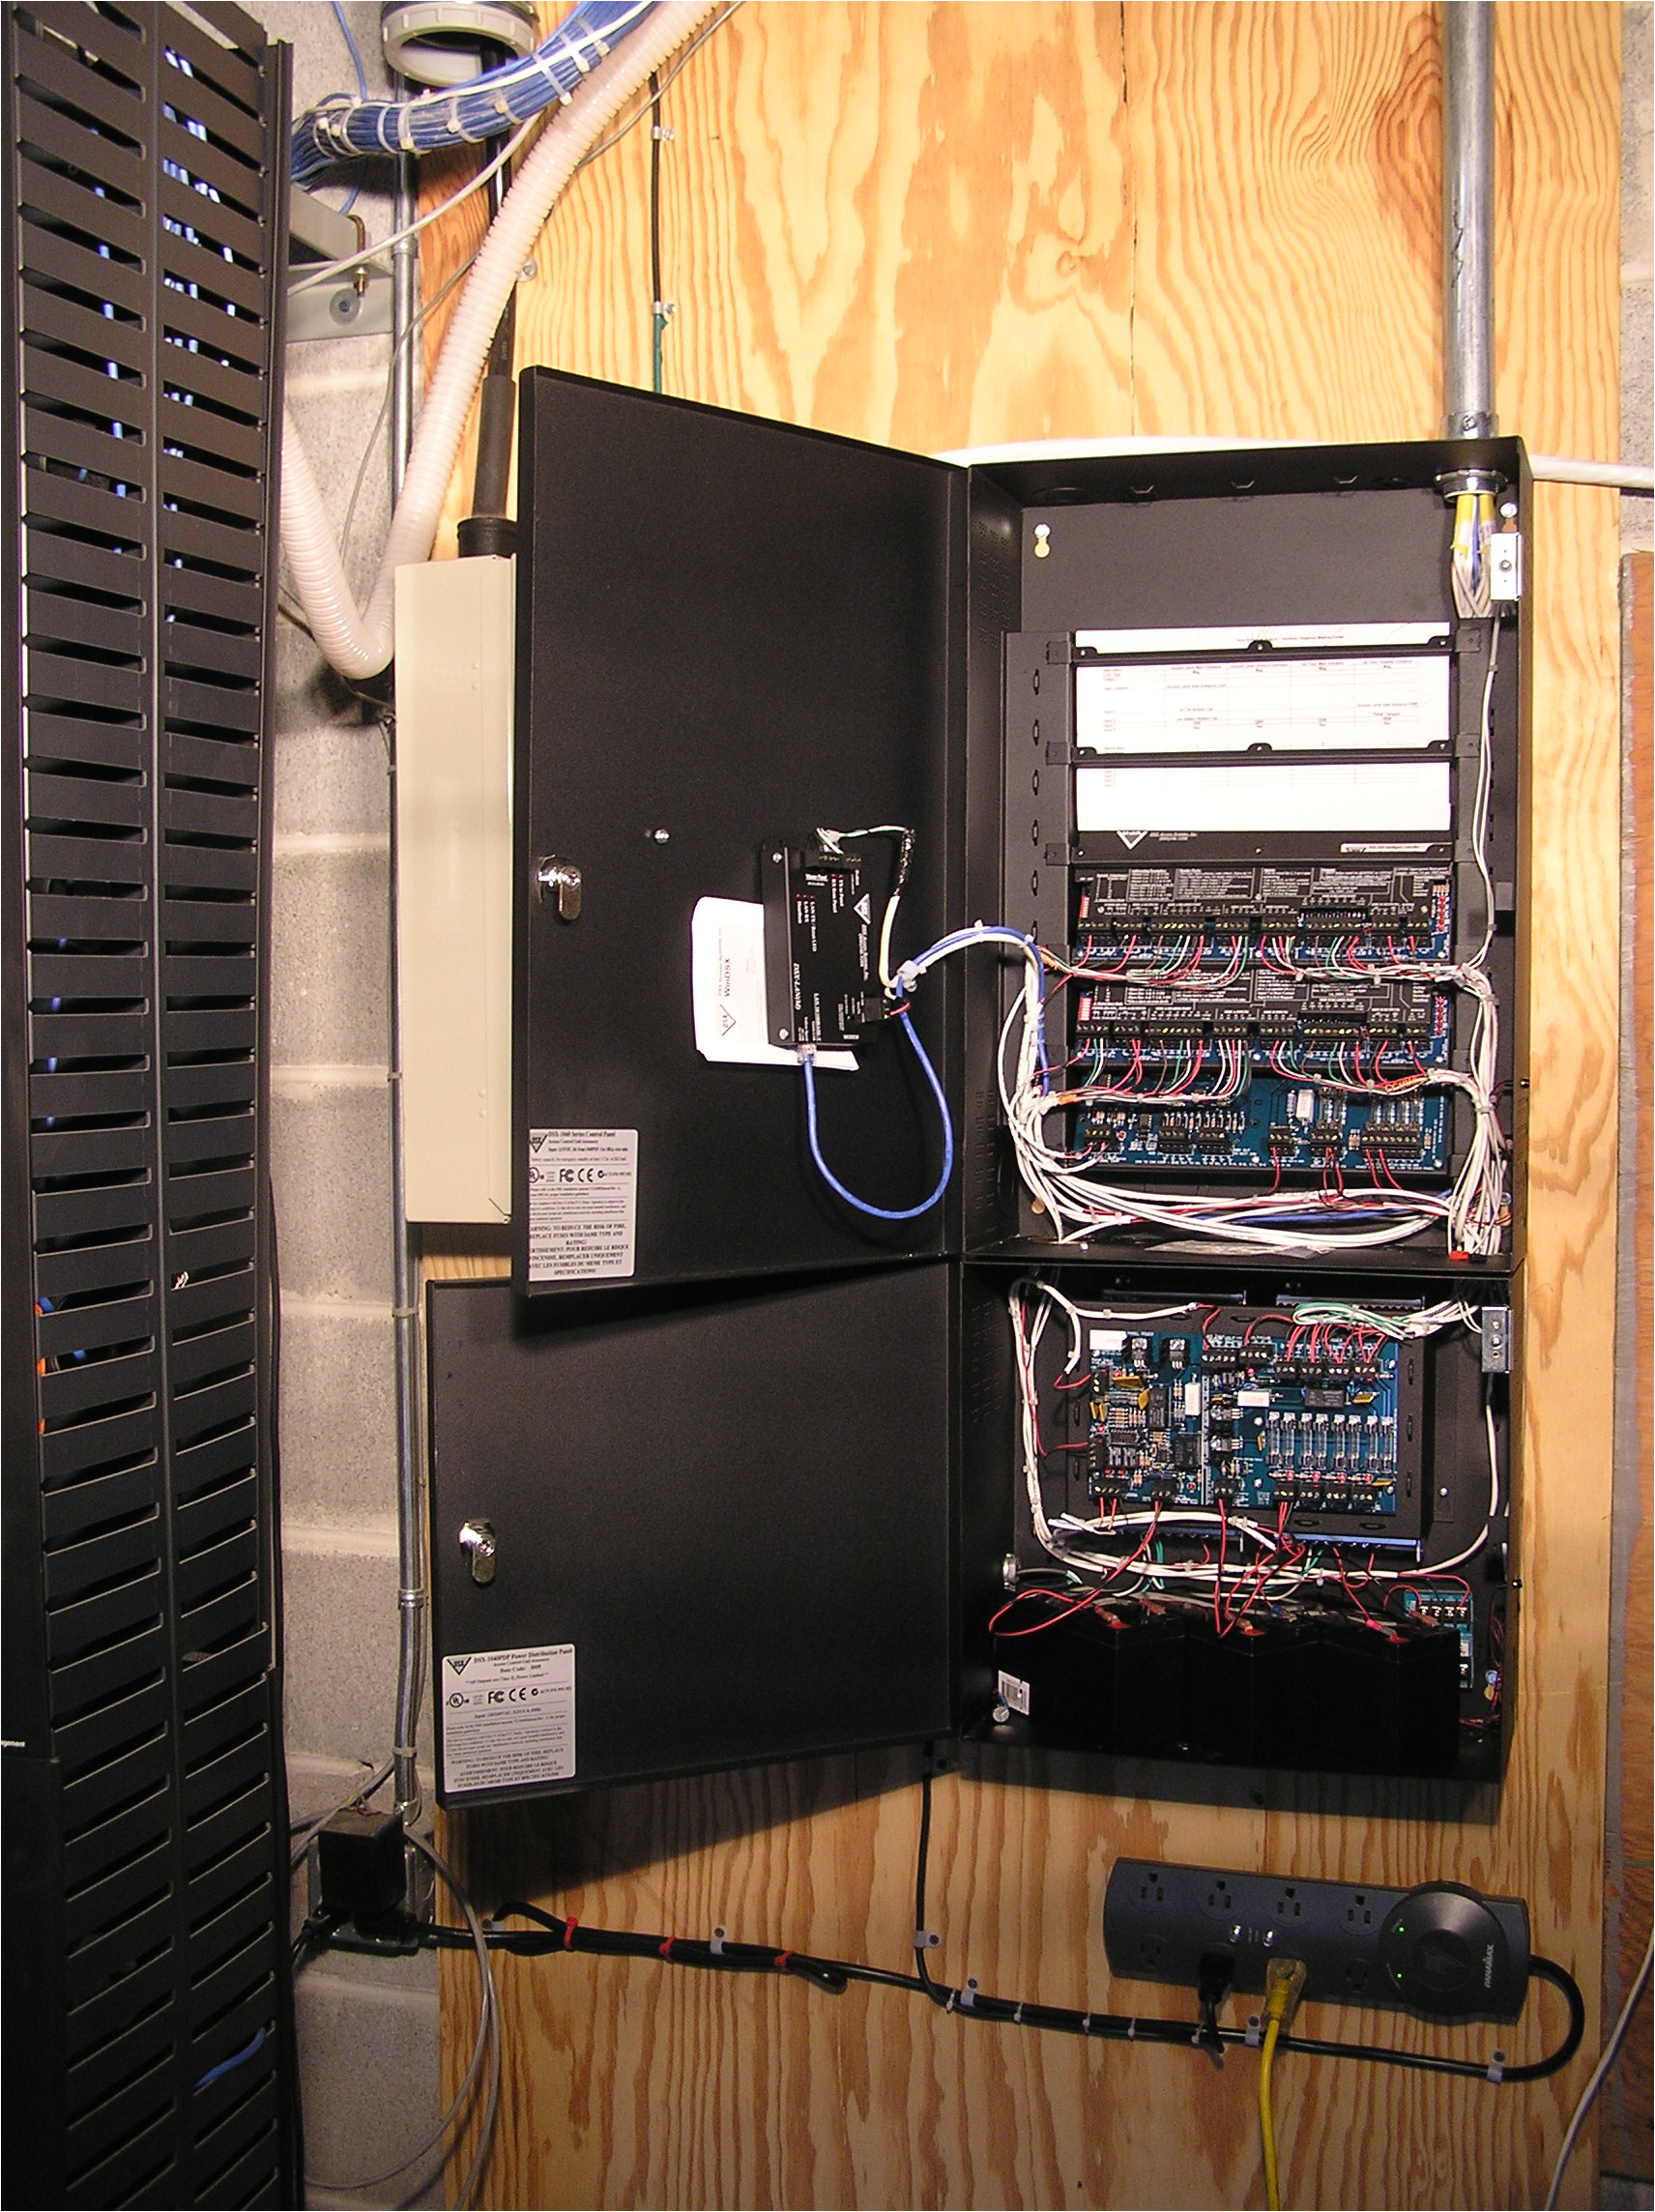 dsx panel wiring diagram wiring diagram blog dsx panel wiring diagram